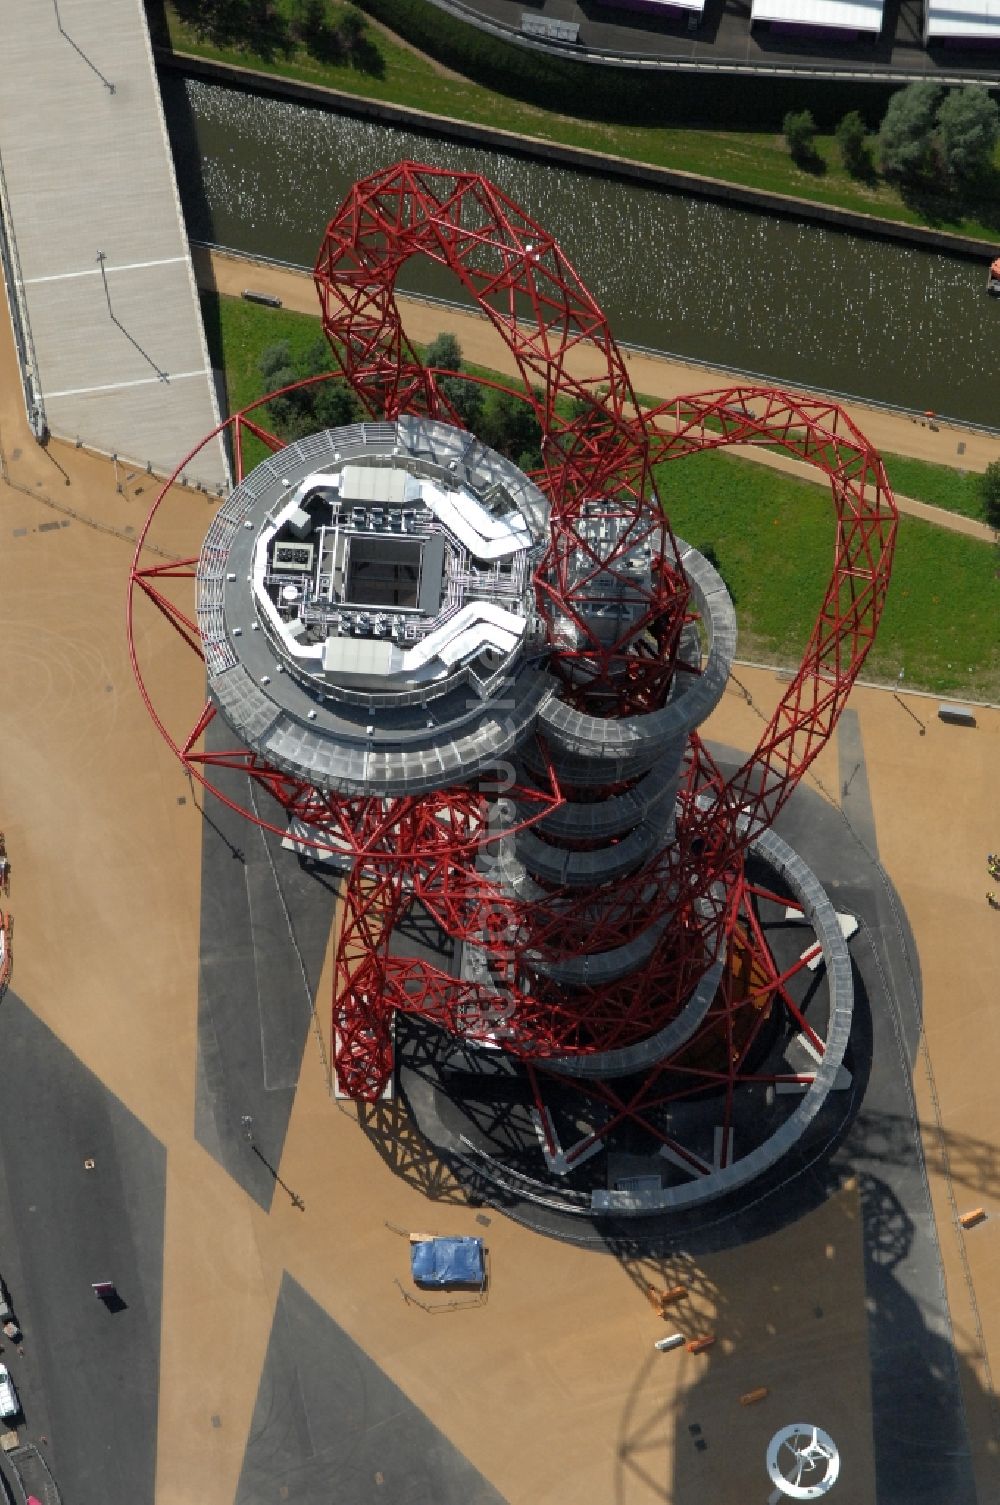 London aus der Vogelperspektive: London Olympia 2012 - Aussichtsturm ArcelorMittal Orbit